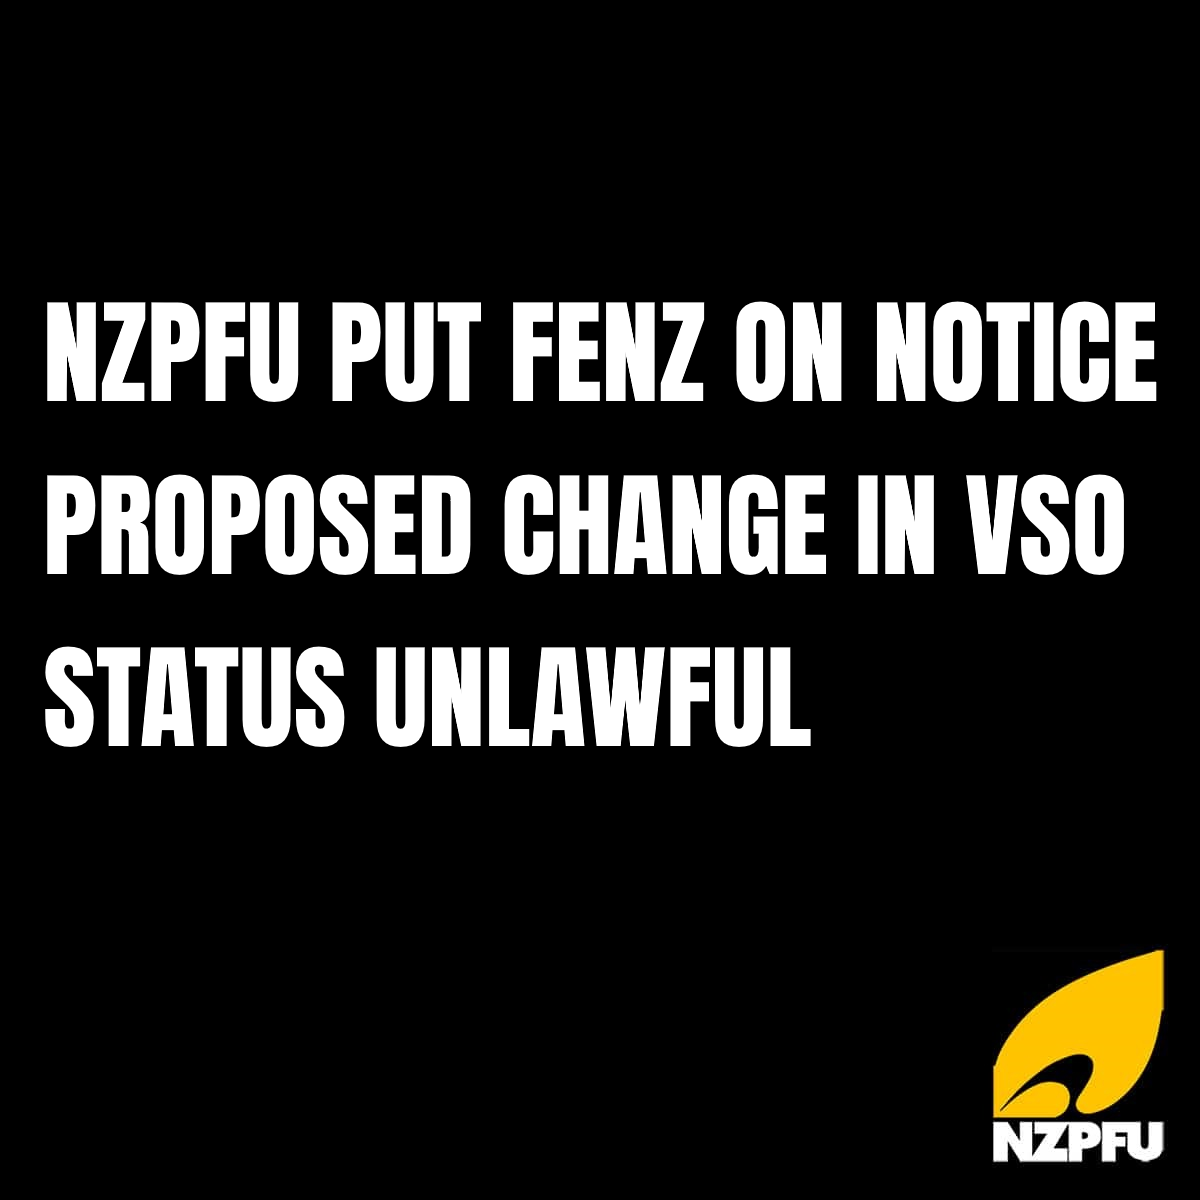 NZPFU PUT FENZ ON NOTICE PROPOSED CHANGE IN VSO STATUS UNLAWFUL